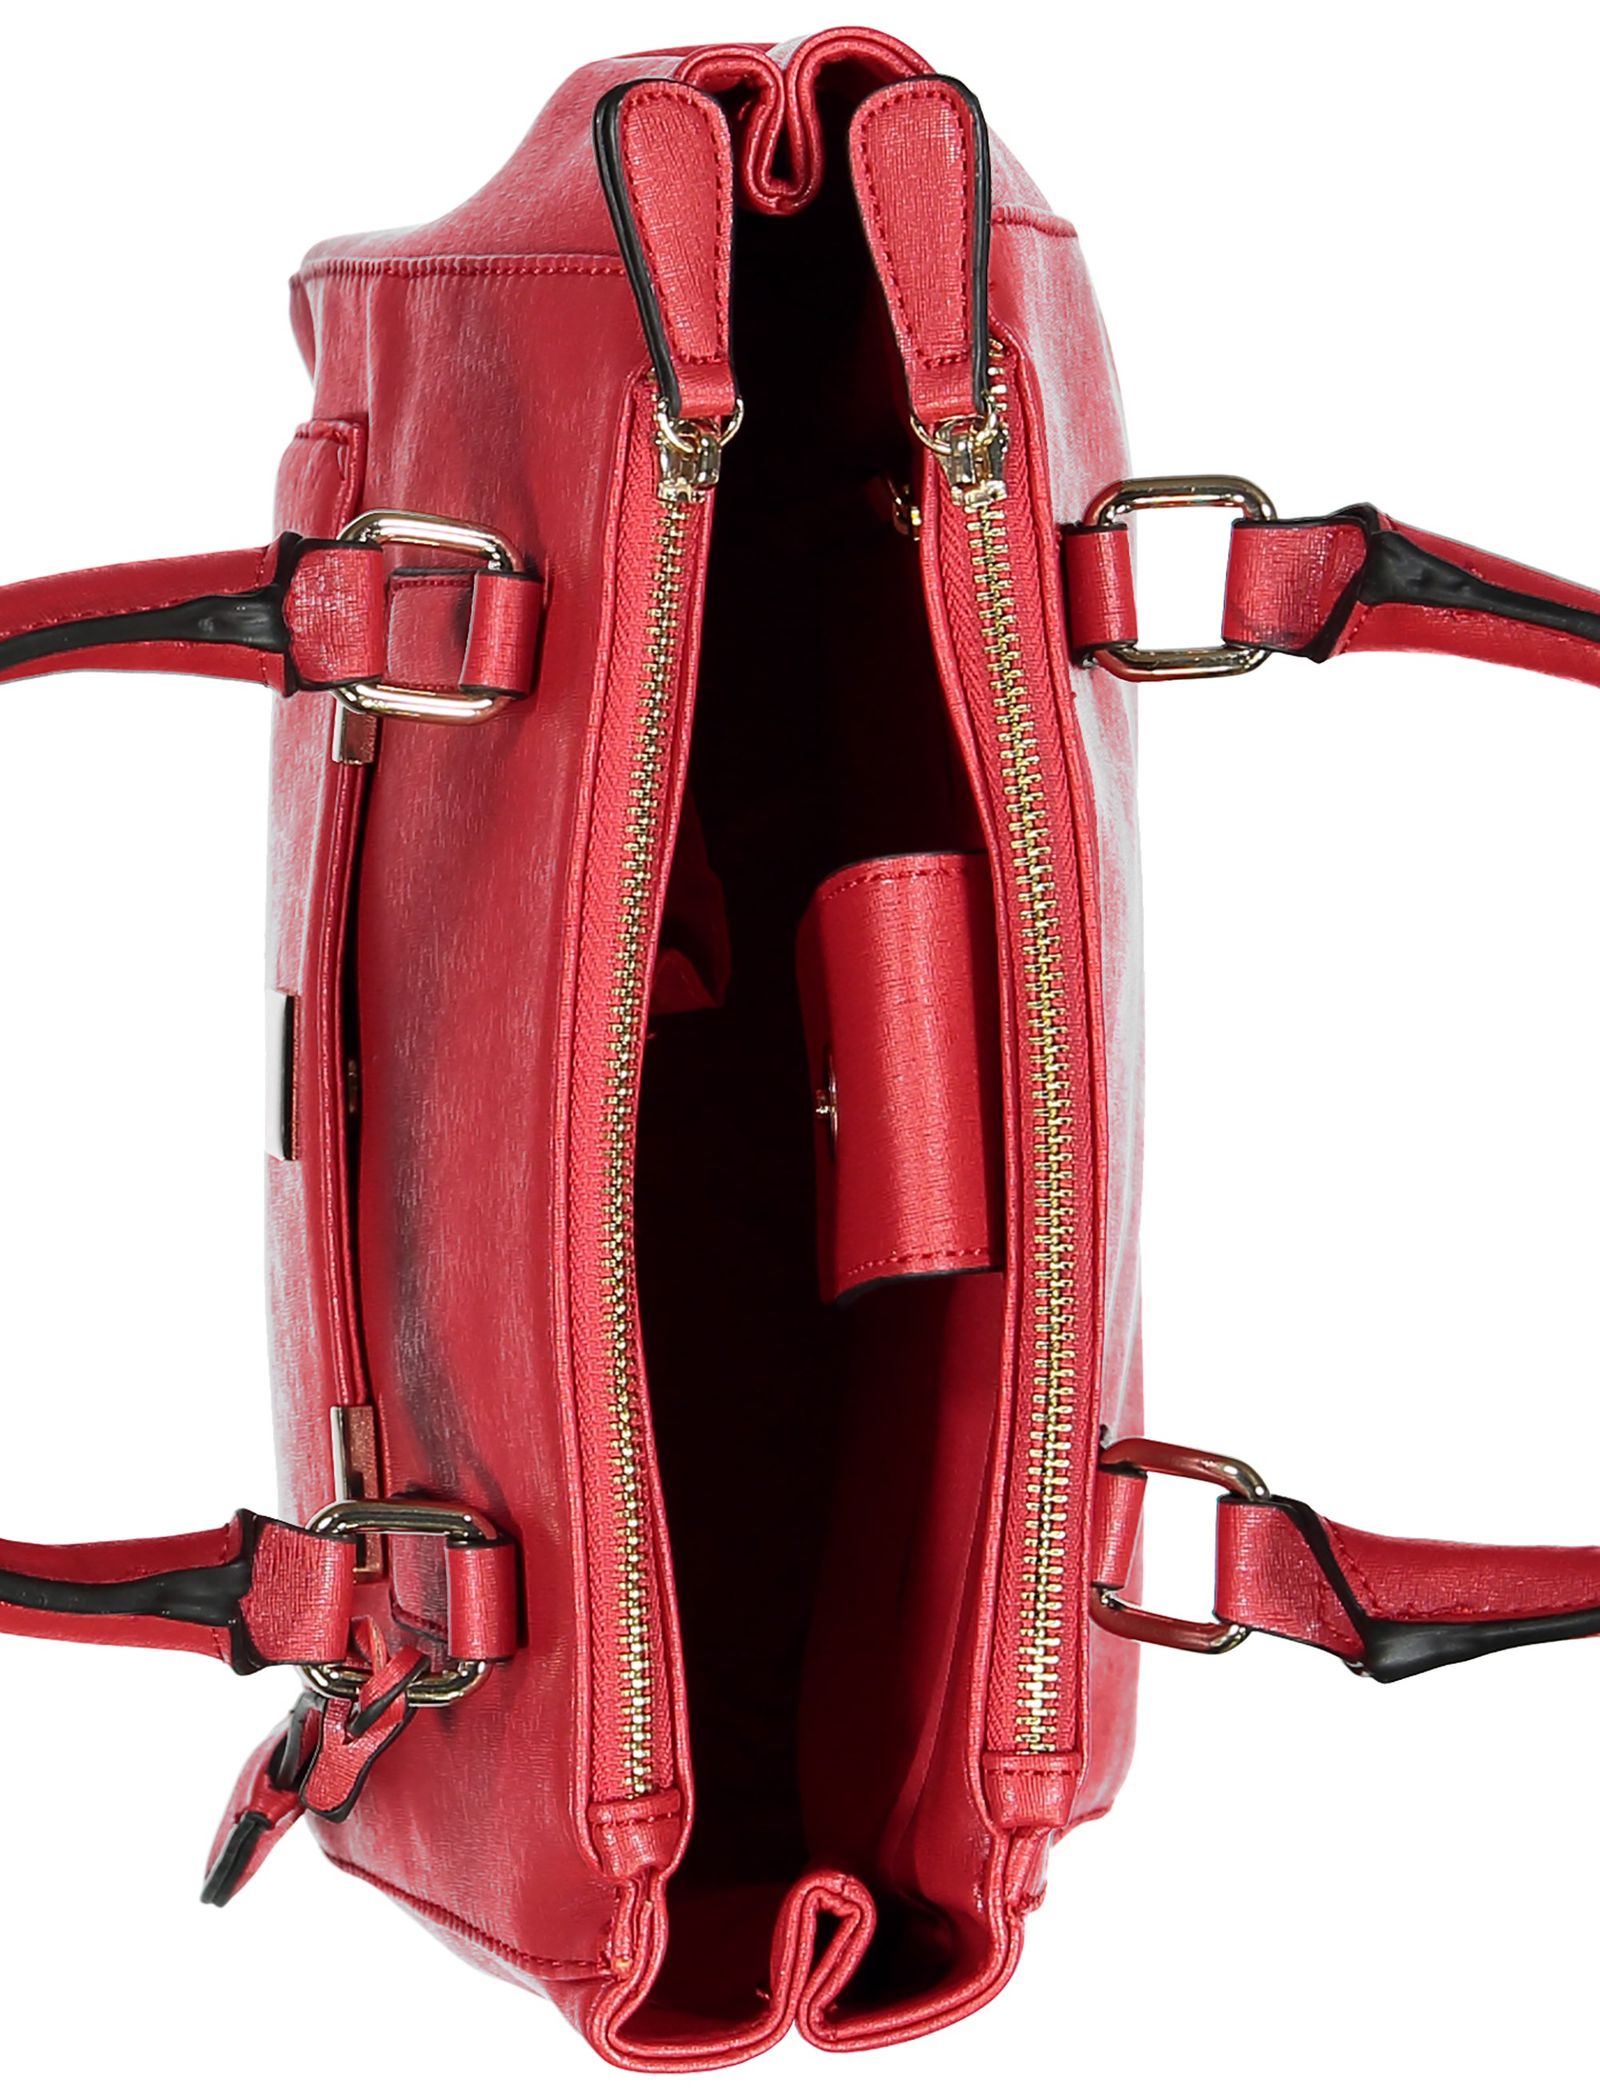 کیف دستی روزمره زنانه - کالکشن تک سایز - قرمز براق  - 7